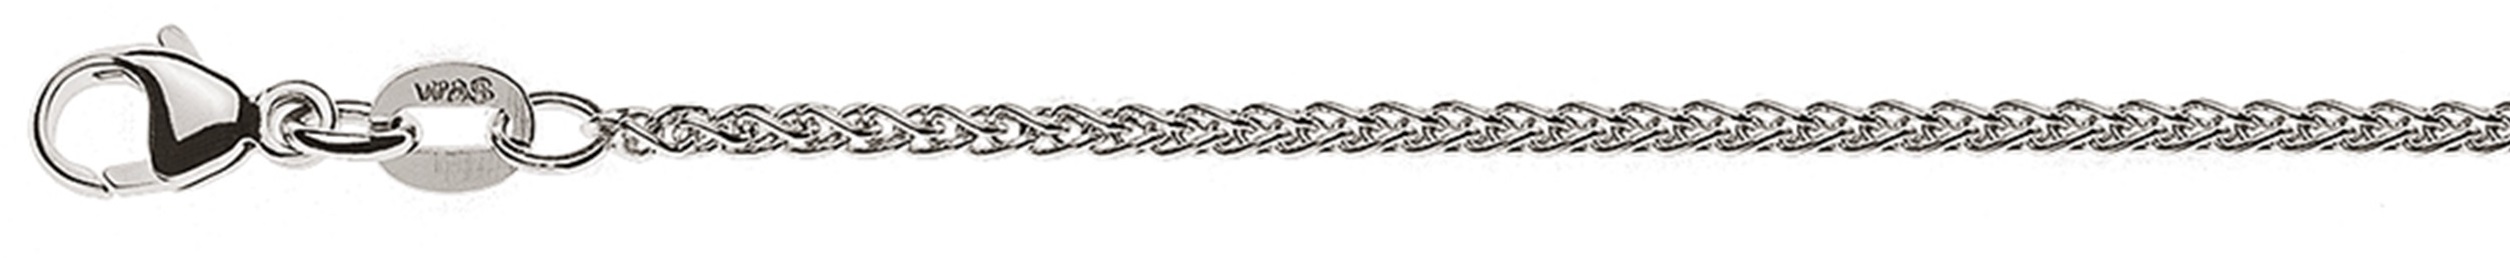 AURONOS Élégance Necklace white gold 14K cable chain 50cm 1.65mm